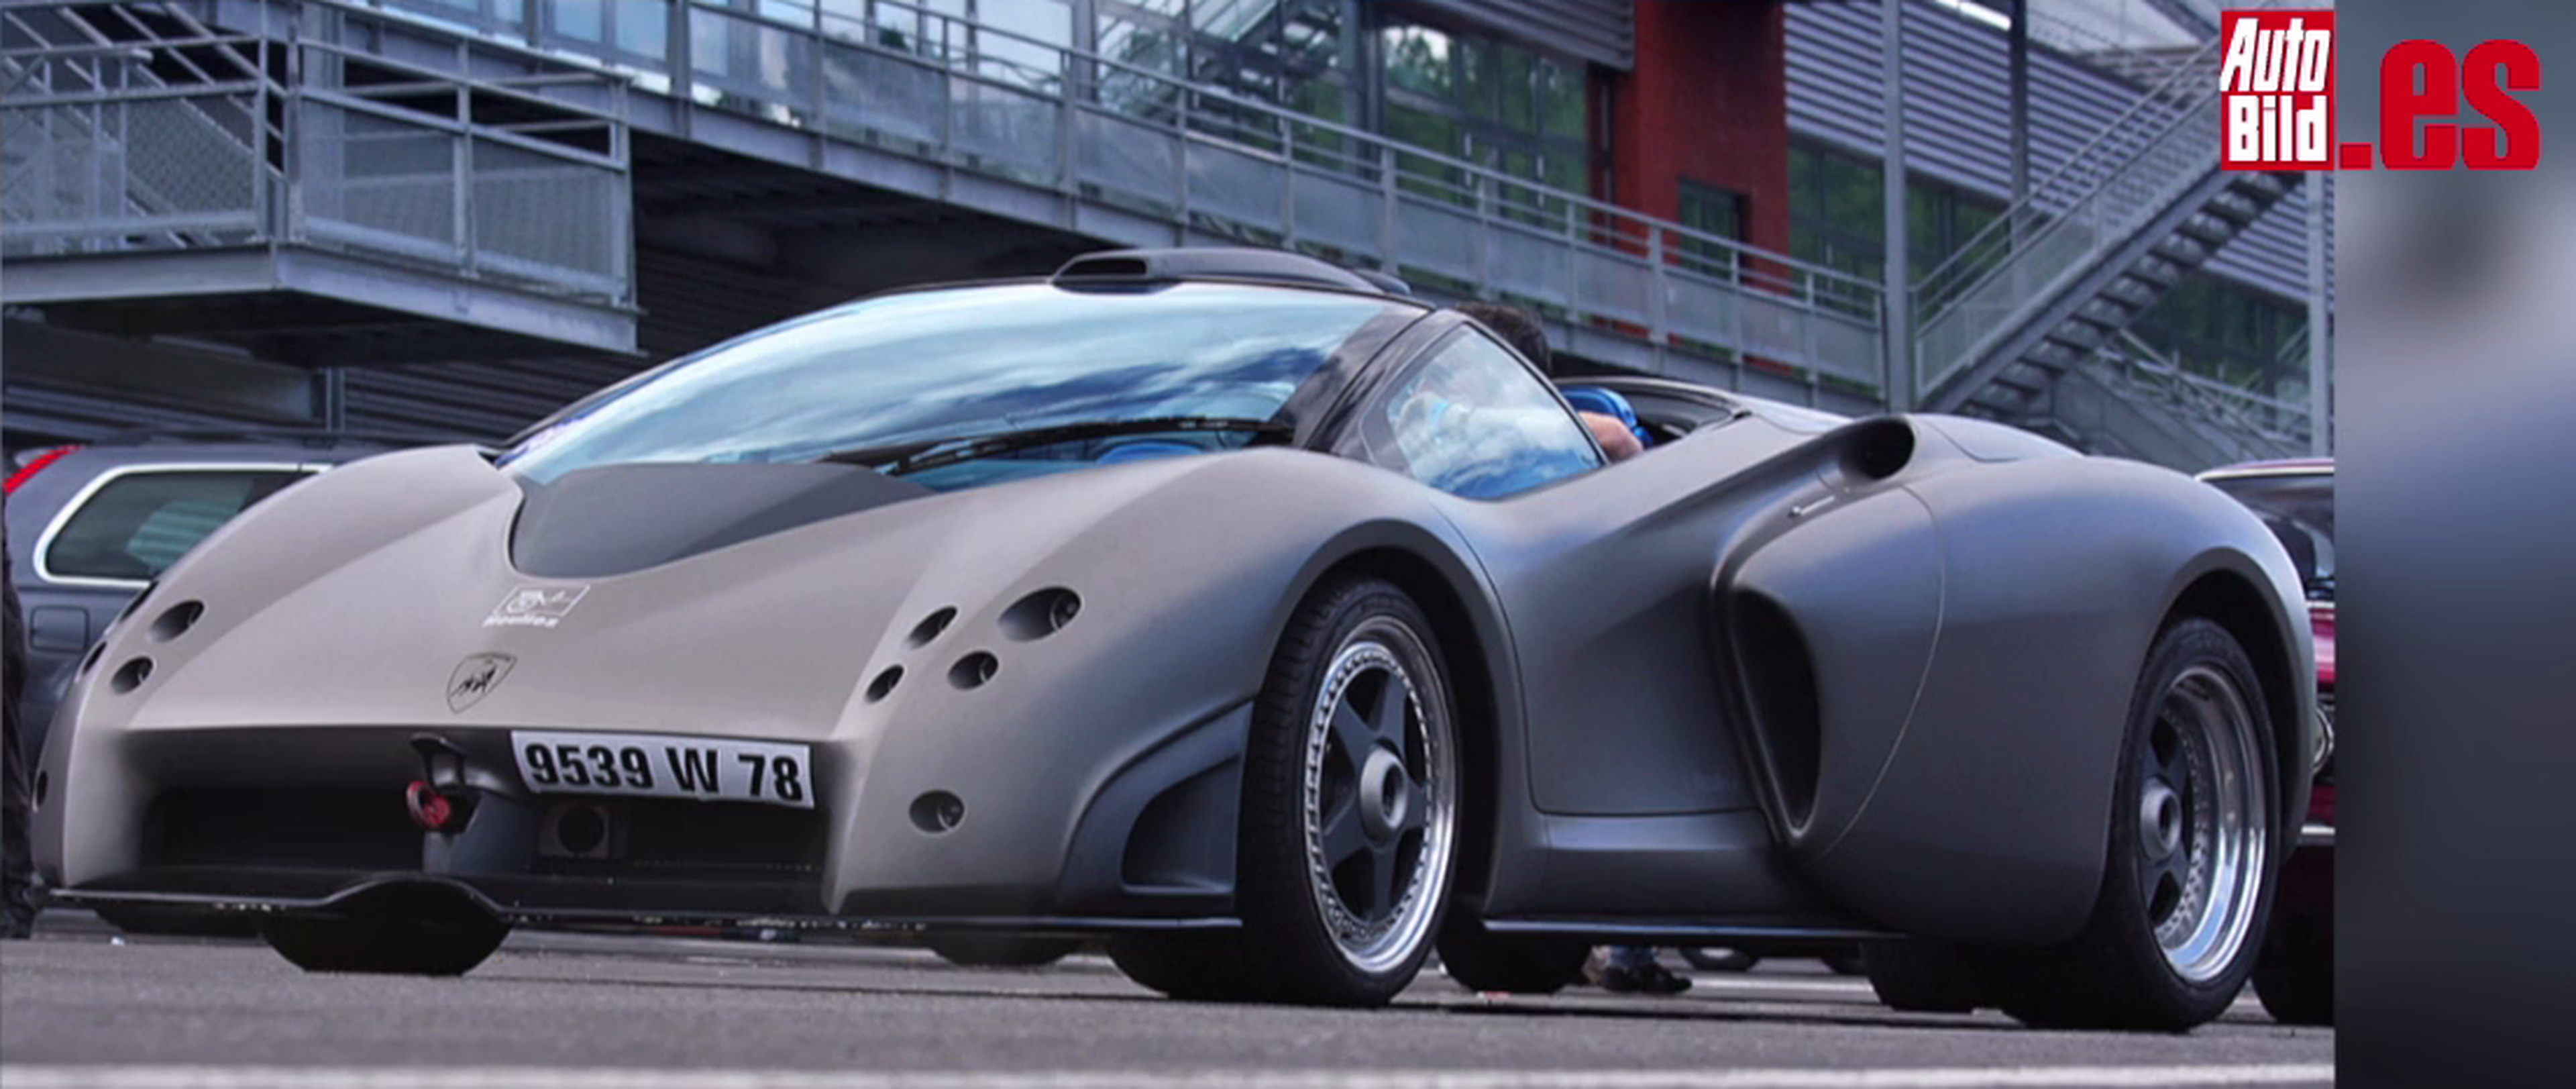 Los 5 prototipos más espectaculares de Lamborghini, ¿cuál es tu favorito?